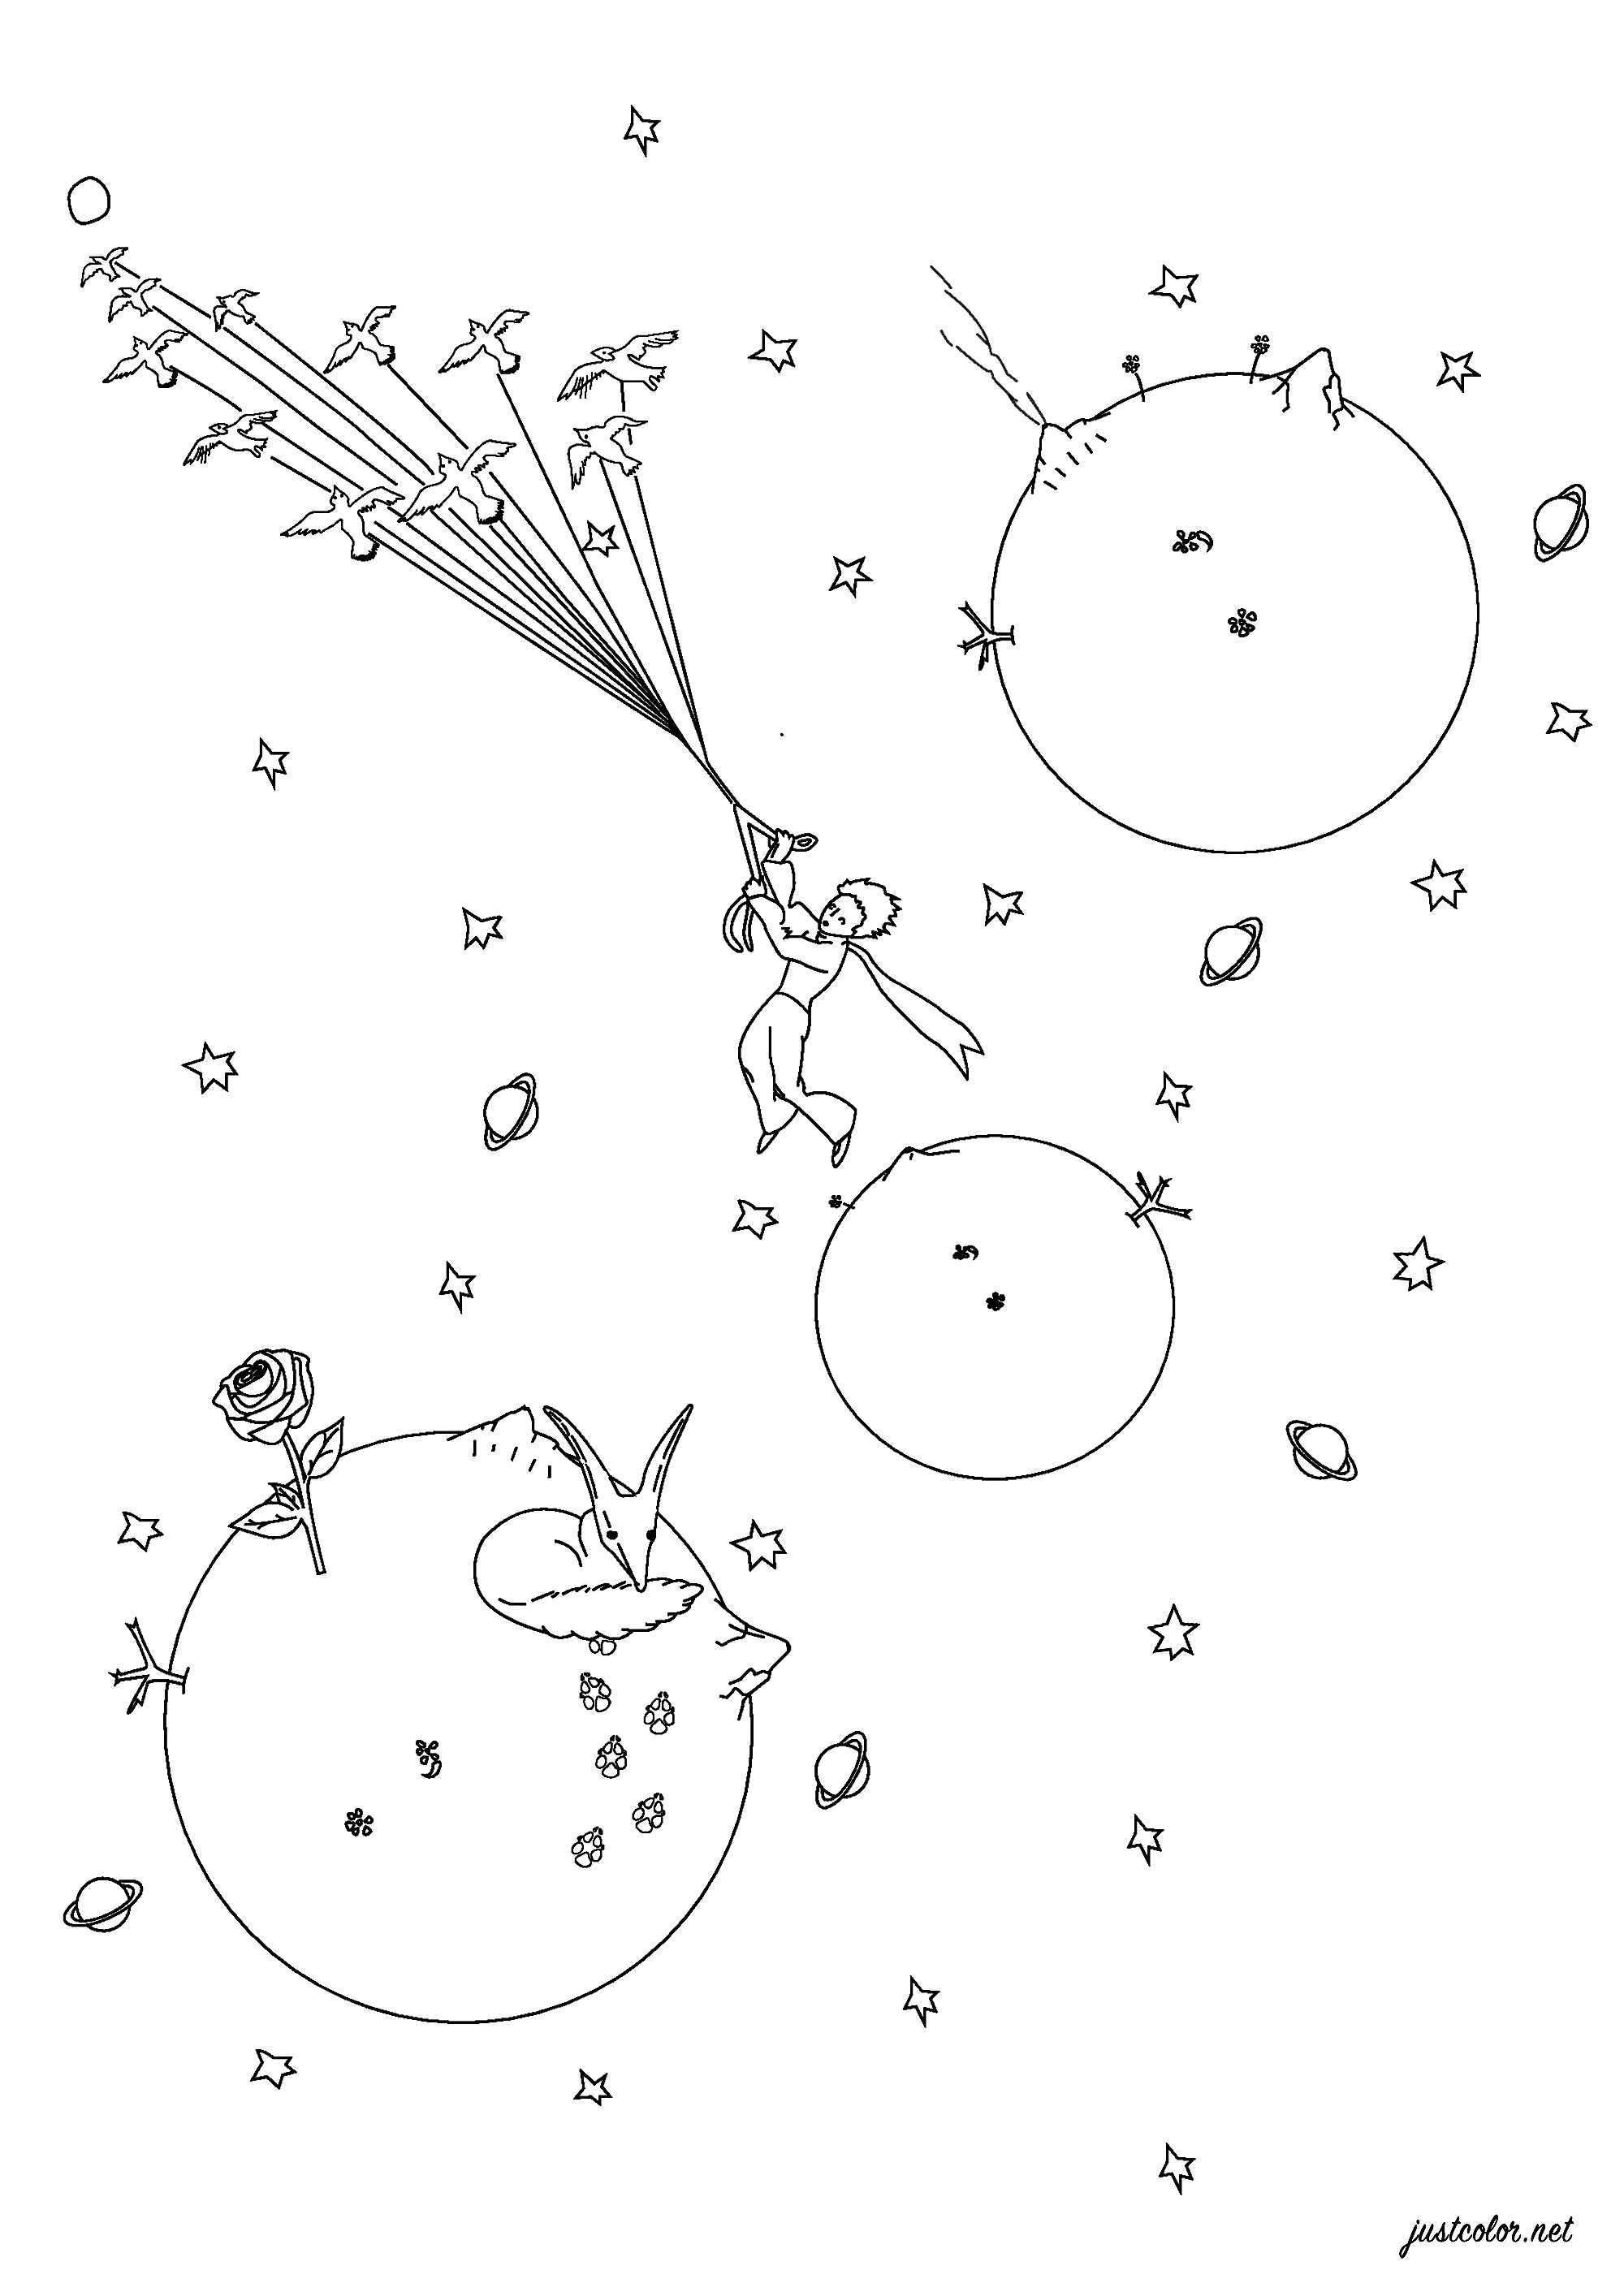 Página para colorir inspirada em O Principezinho de Antoine de Saint-Exupéry. Publicado pela primeira vez em 1943, O Principezinho é um conto poético, com ilustrações em aguarela do autor, em que um piloto retido no deserto encontra um jovem príncipe que visita a Terra vindo de um pequeno asteroide, Artista : Pierre C